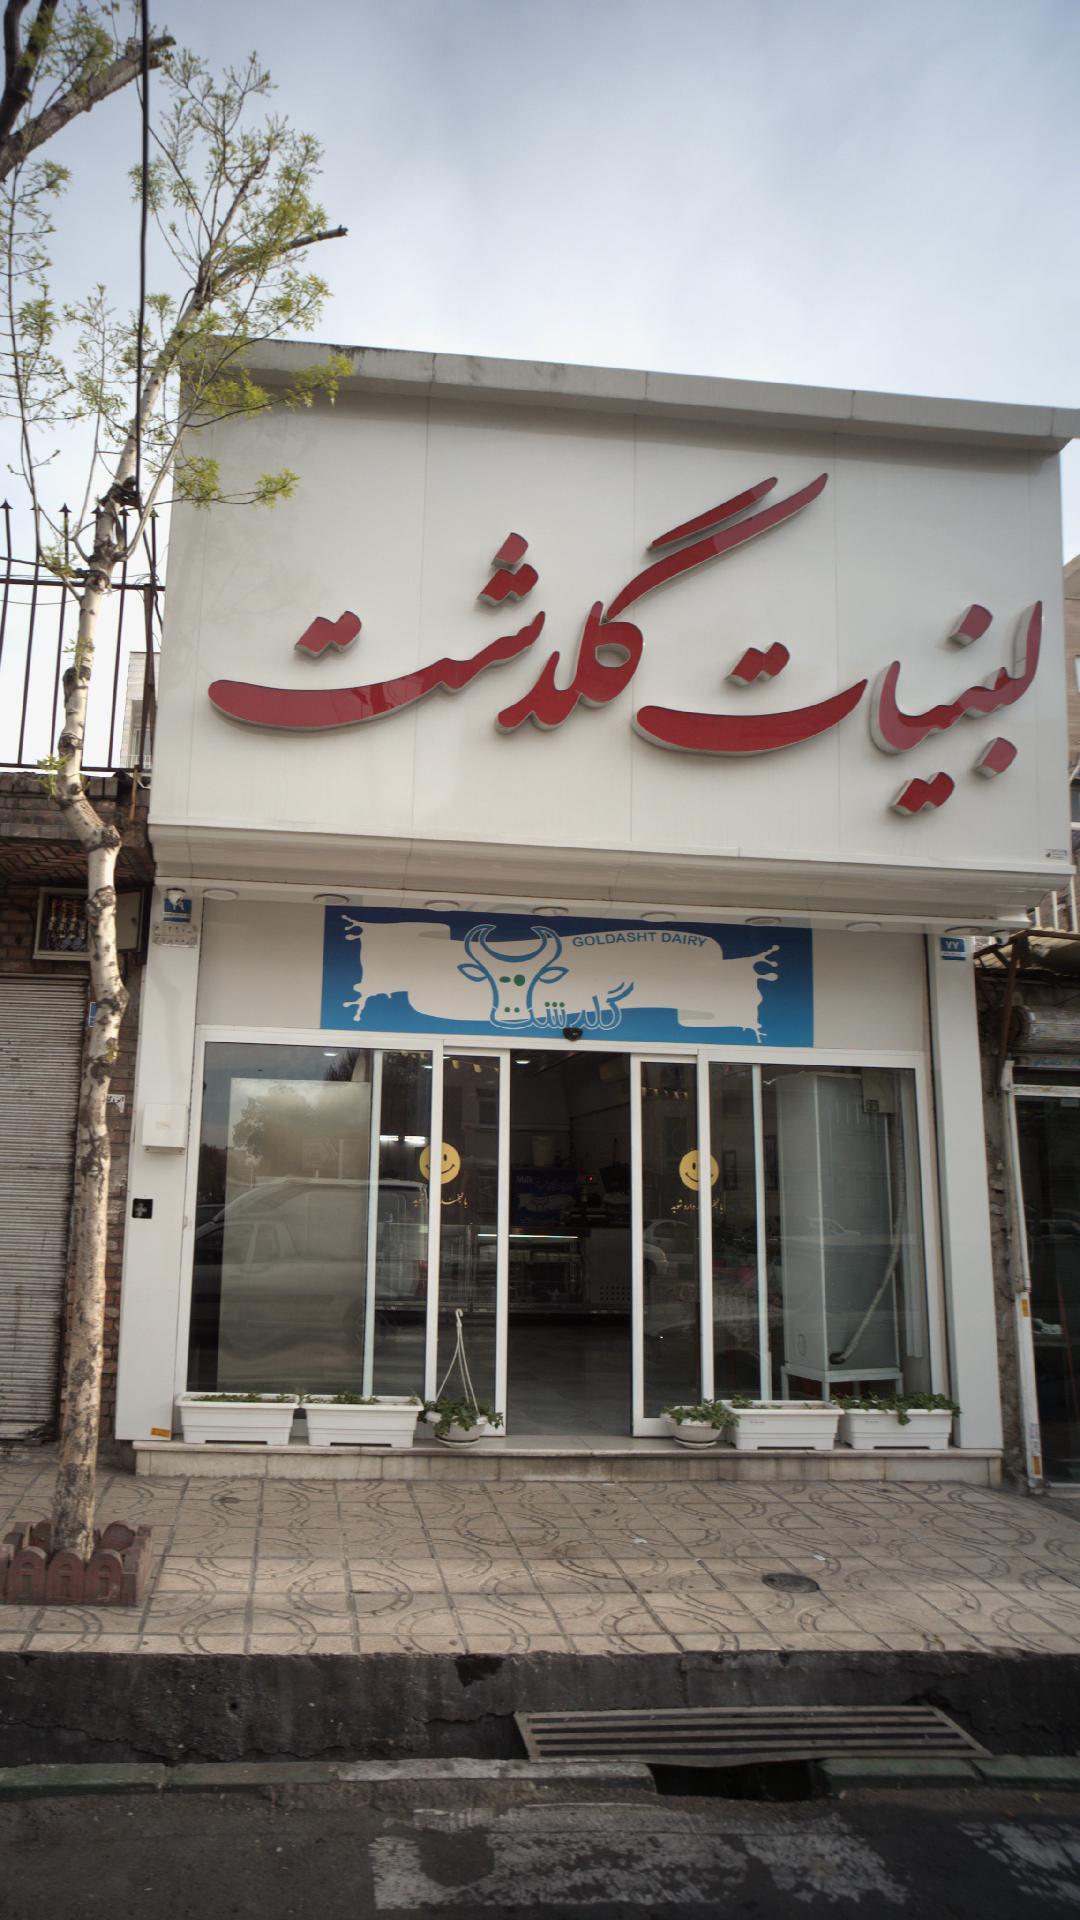 لبنیات گلدشت محله یاخچی آباد تهران؛ آدرس، تلفن، ساعت کاری | نقشه و مسیریاب  بلد